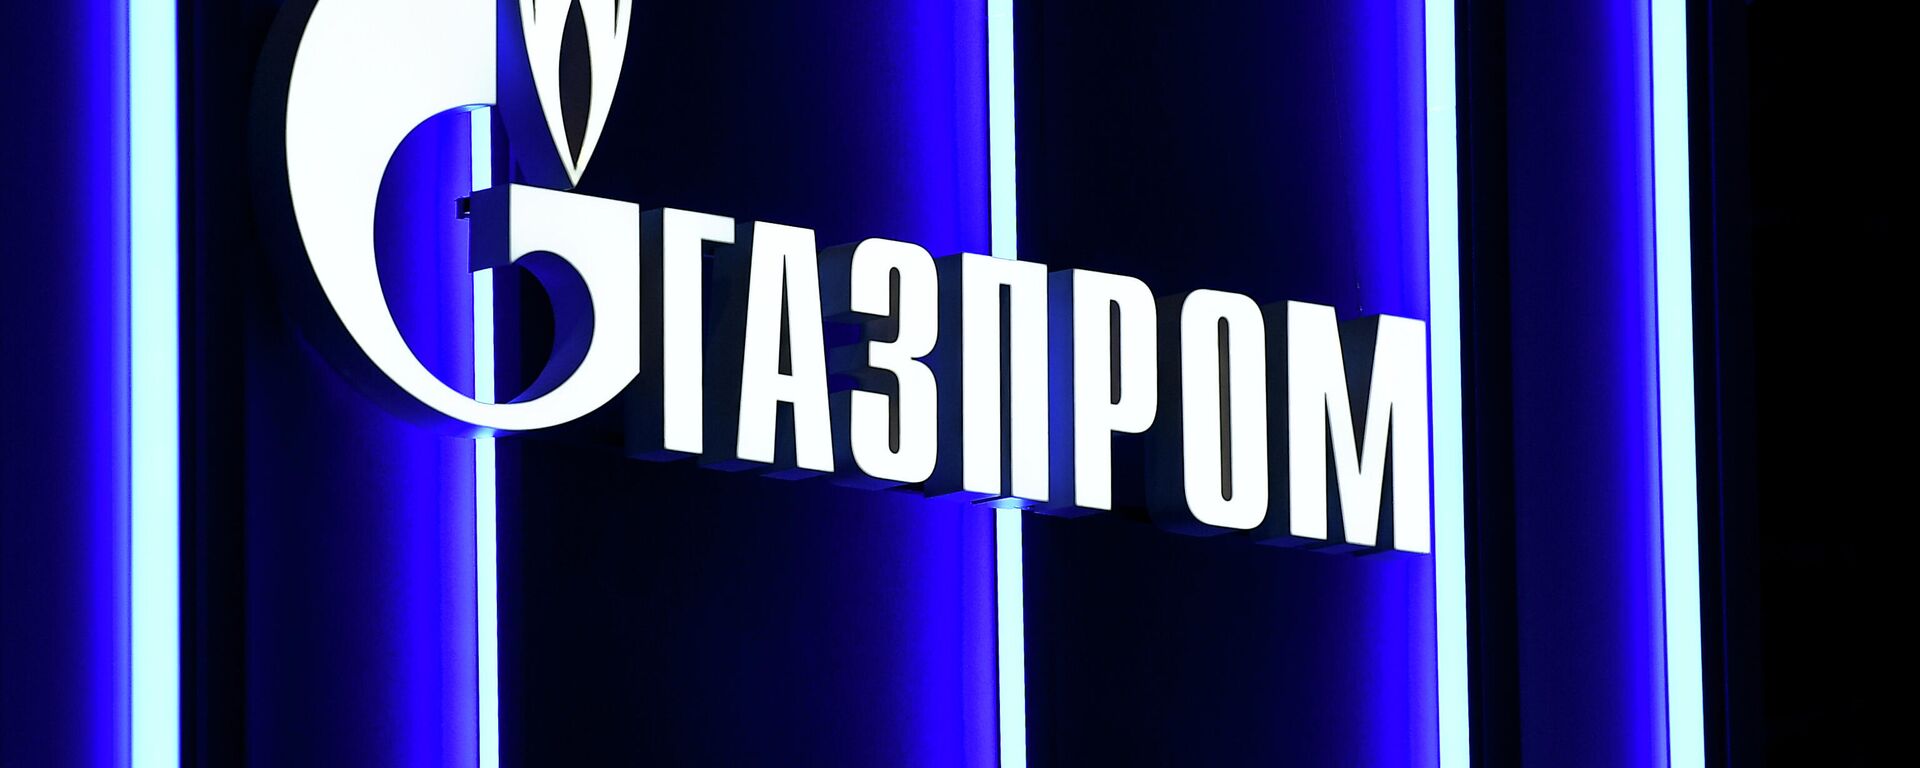 Логотип компании Газпром, архивное фото - Sputnik Lietuva, 1920, 10.08.2021